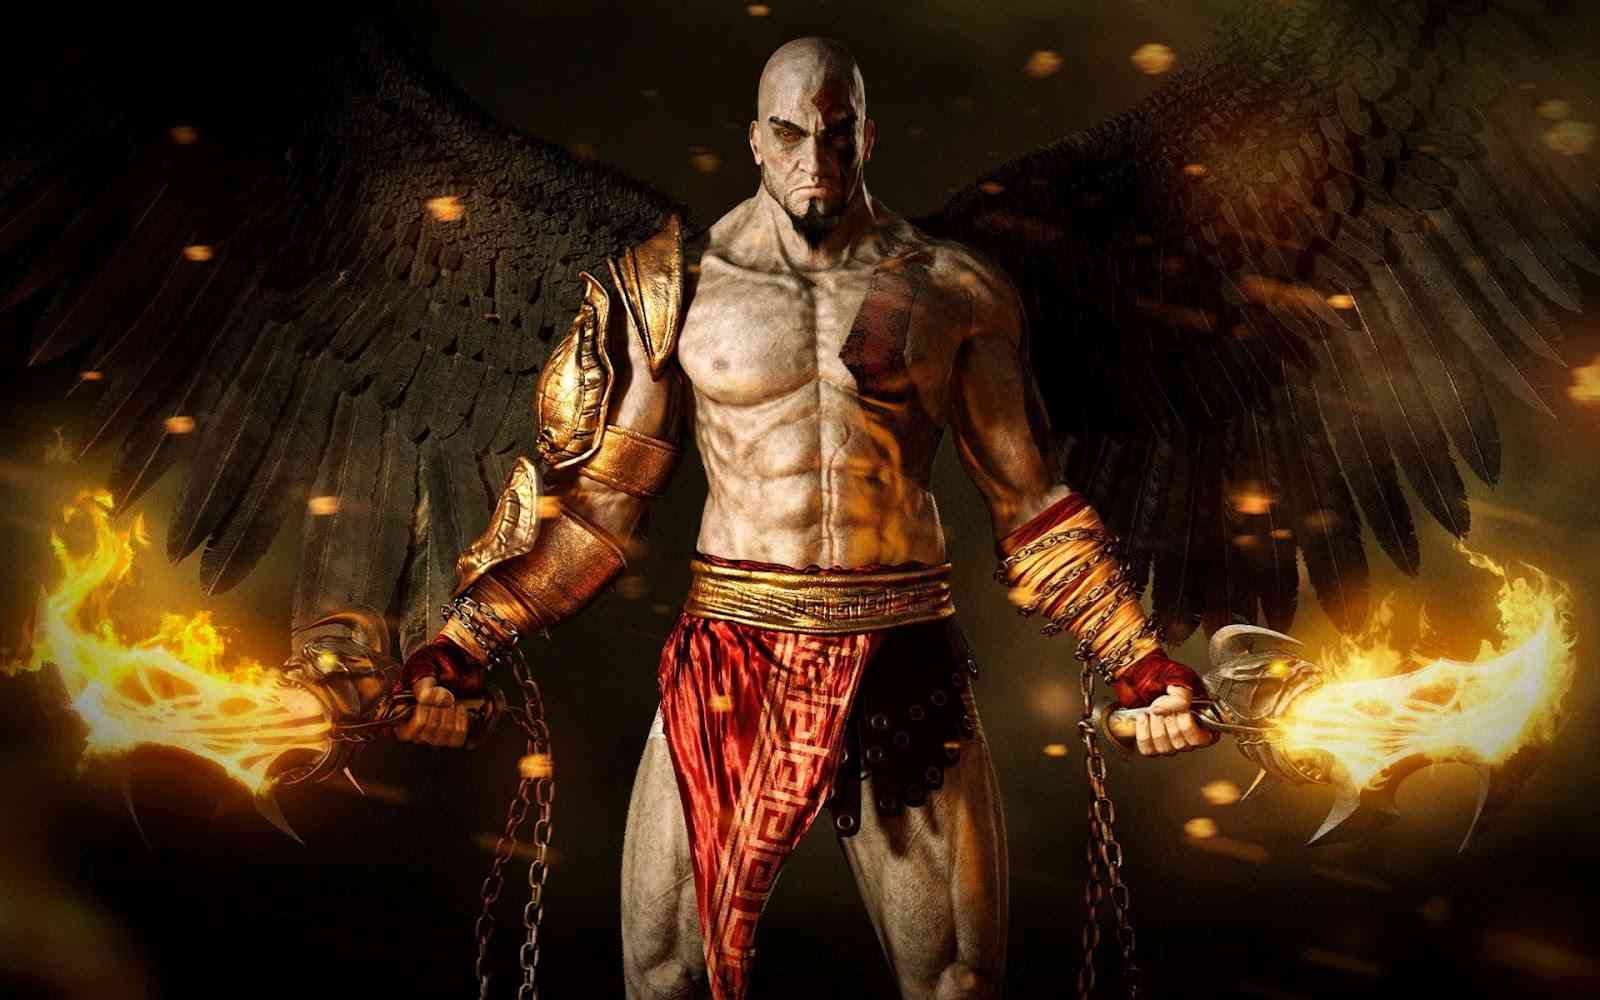 God of War - E3 2016 Gameplay Trailer